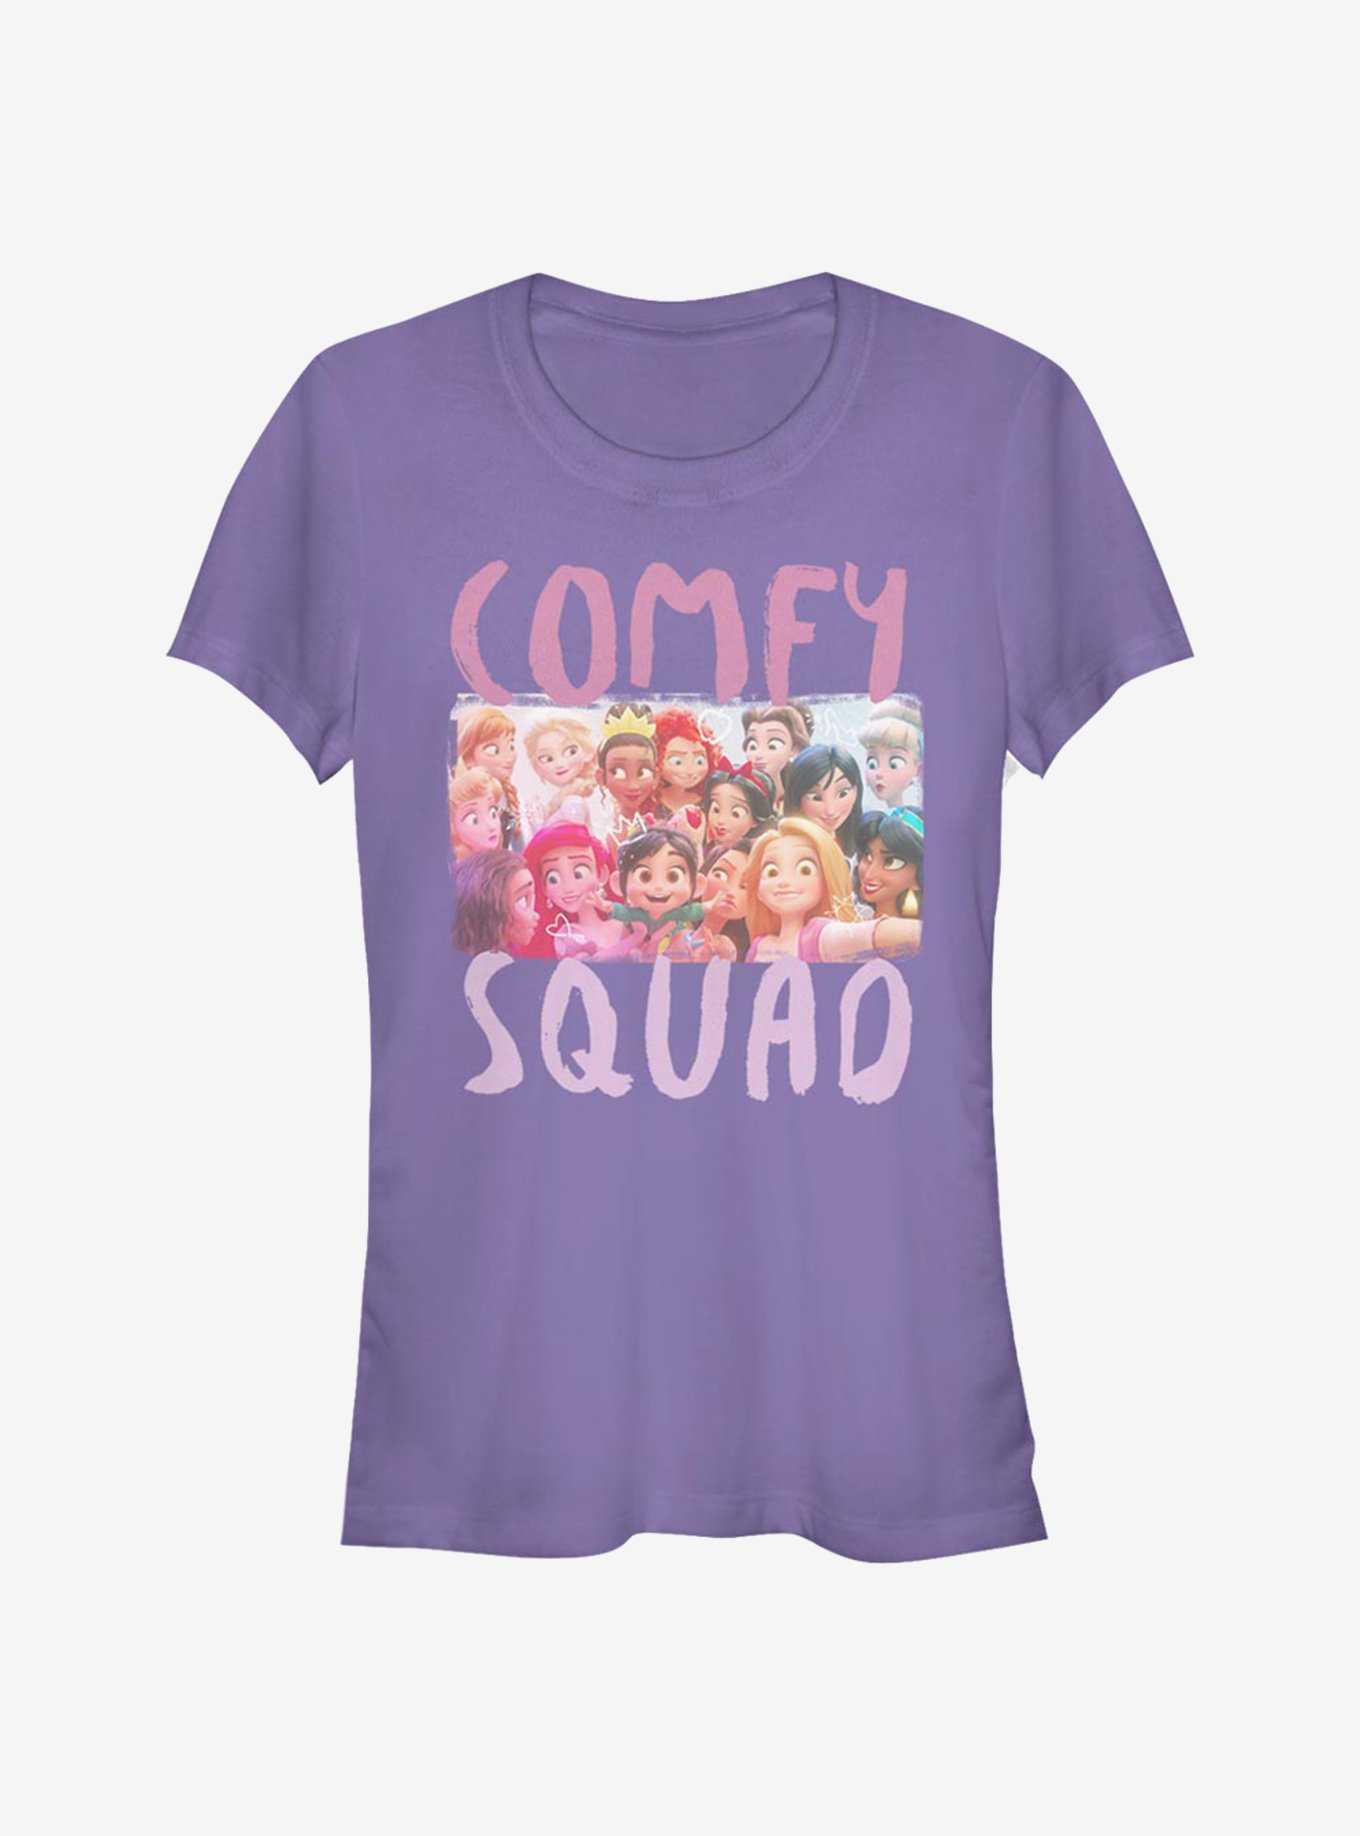 Disney Pixar Wreck-It Ralph Comfy Squad Selfie Girls T-Shirt, , hi-res